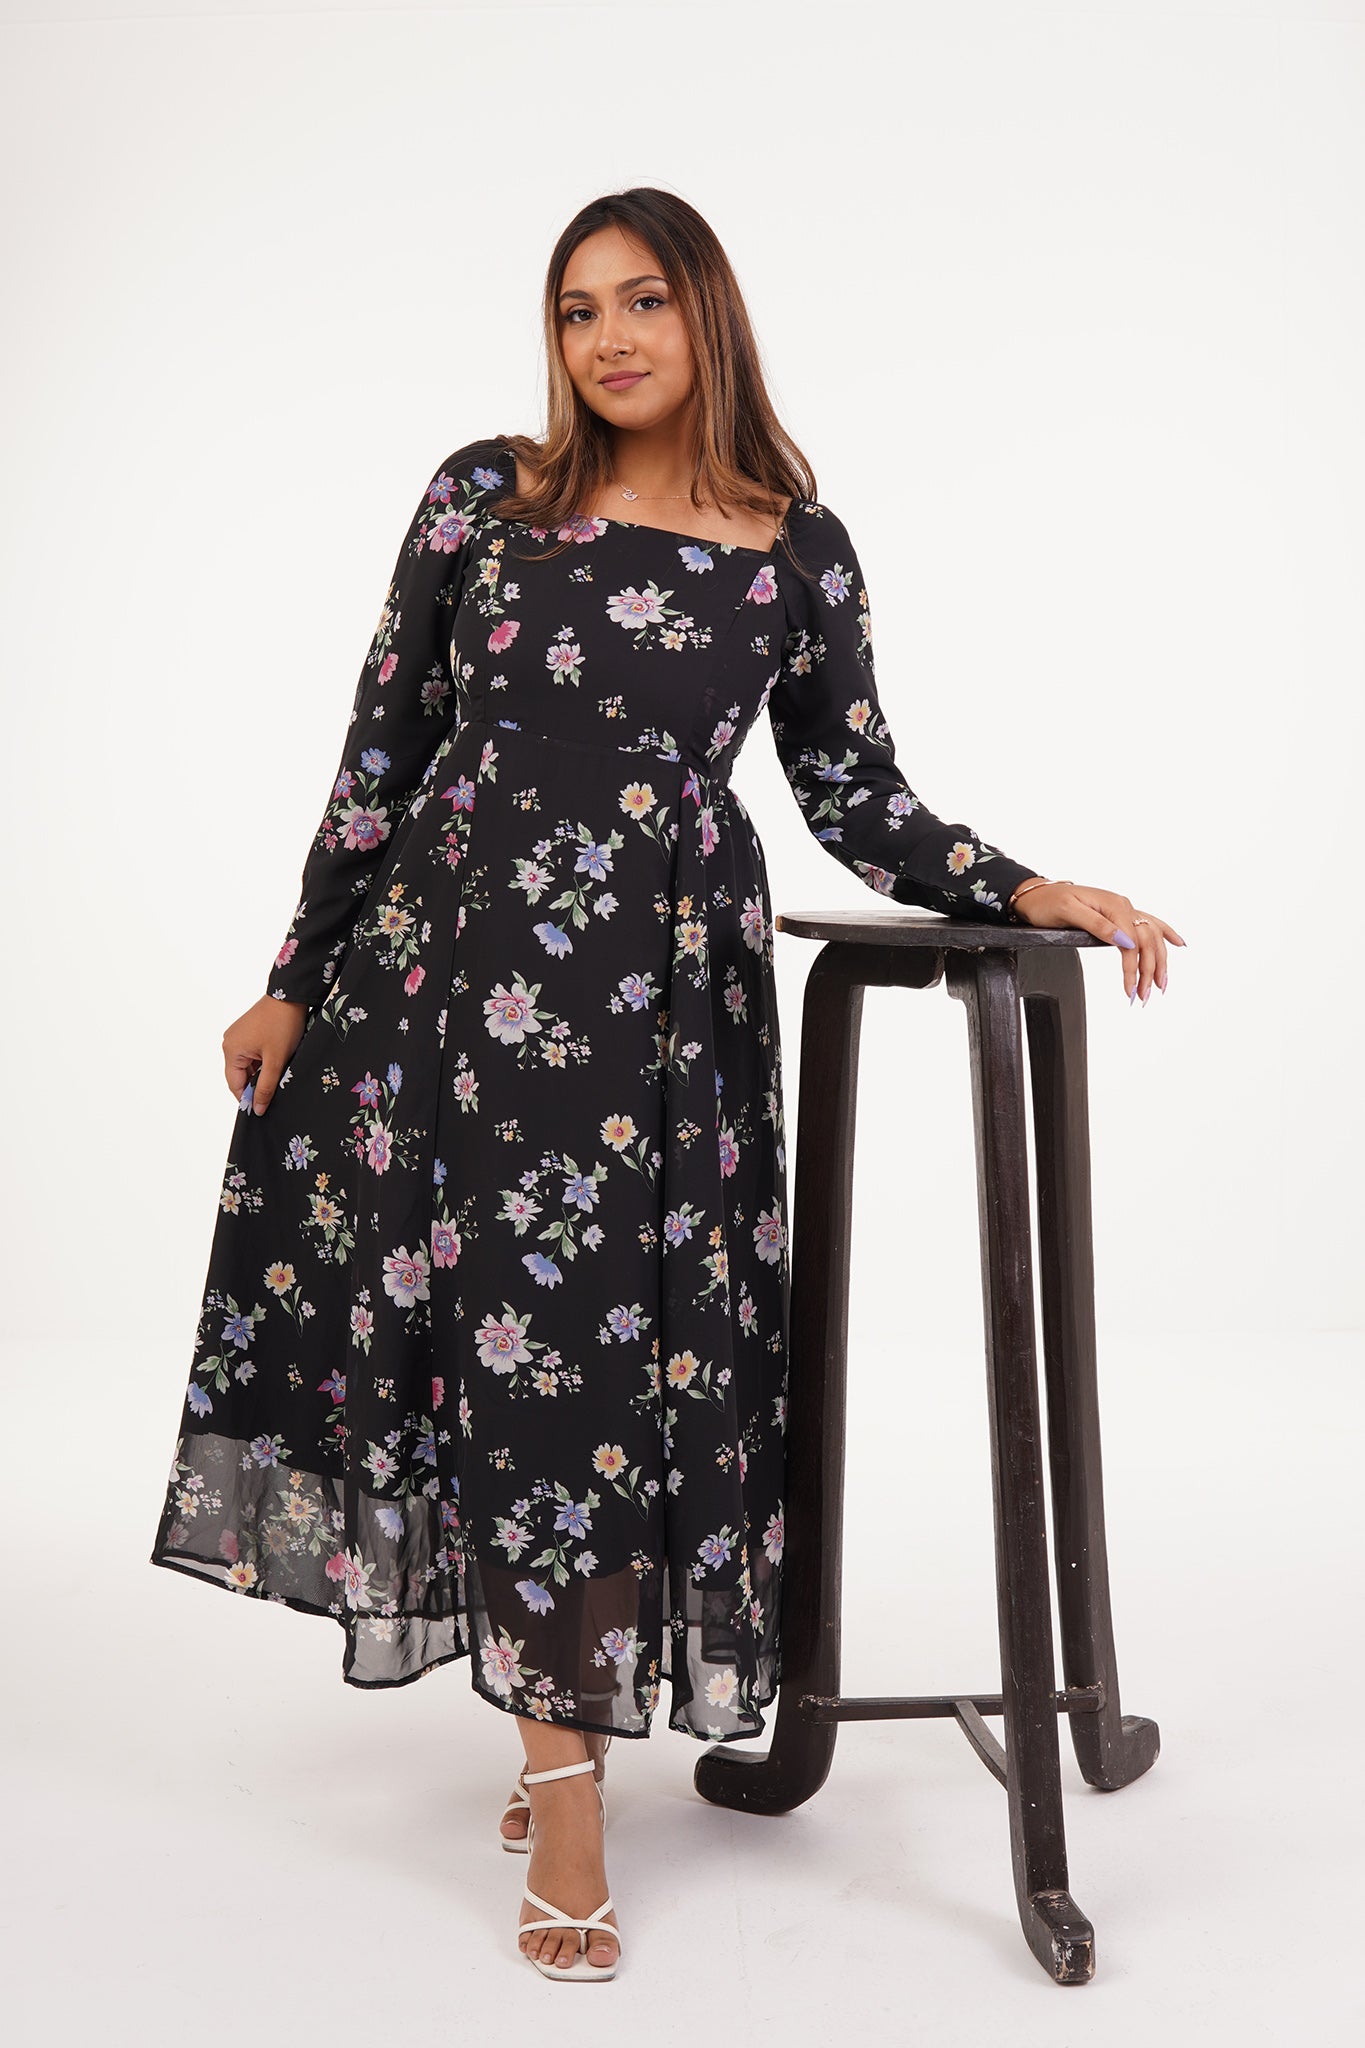 Rachel - Black Floral Dress